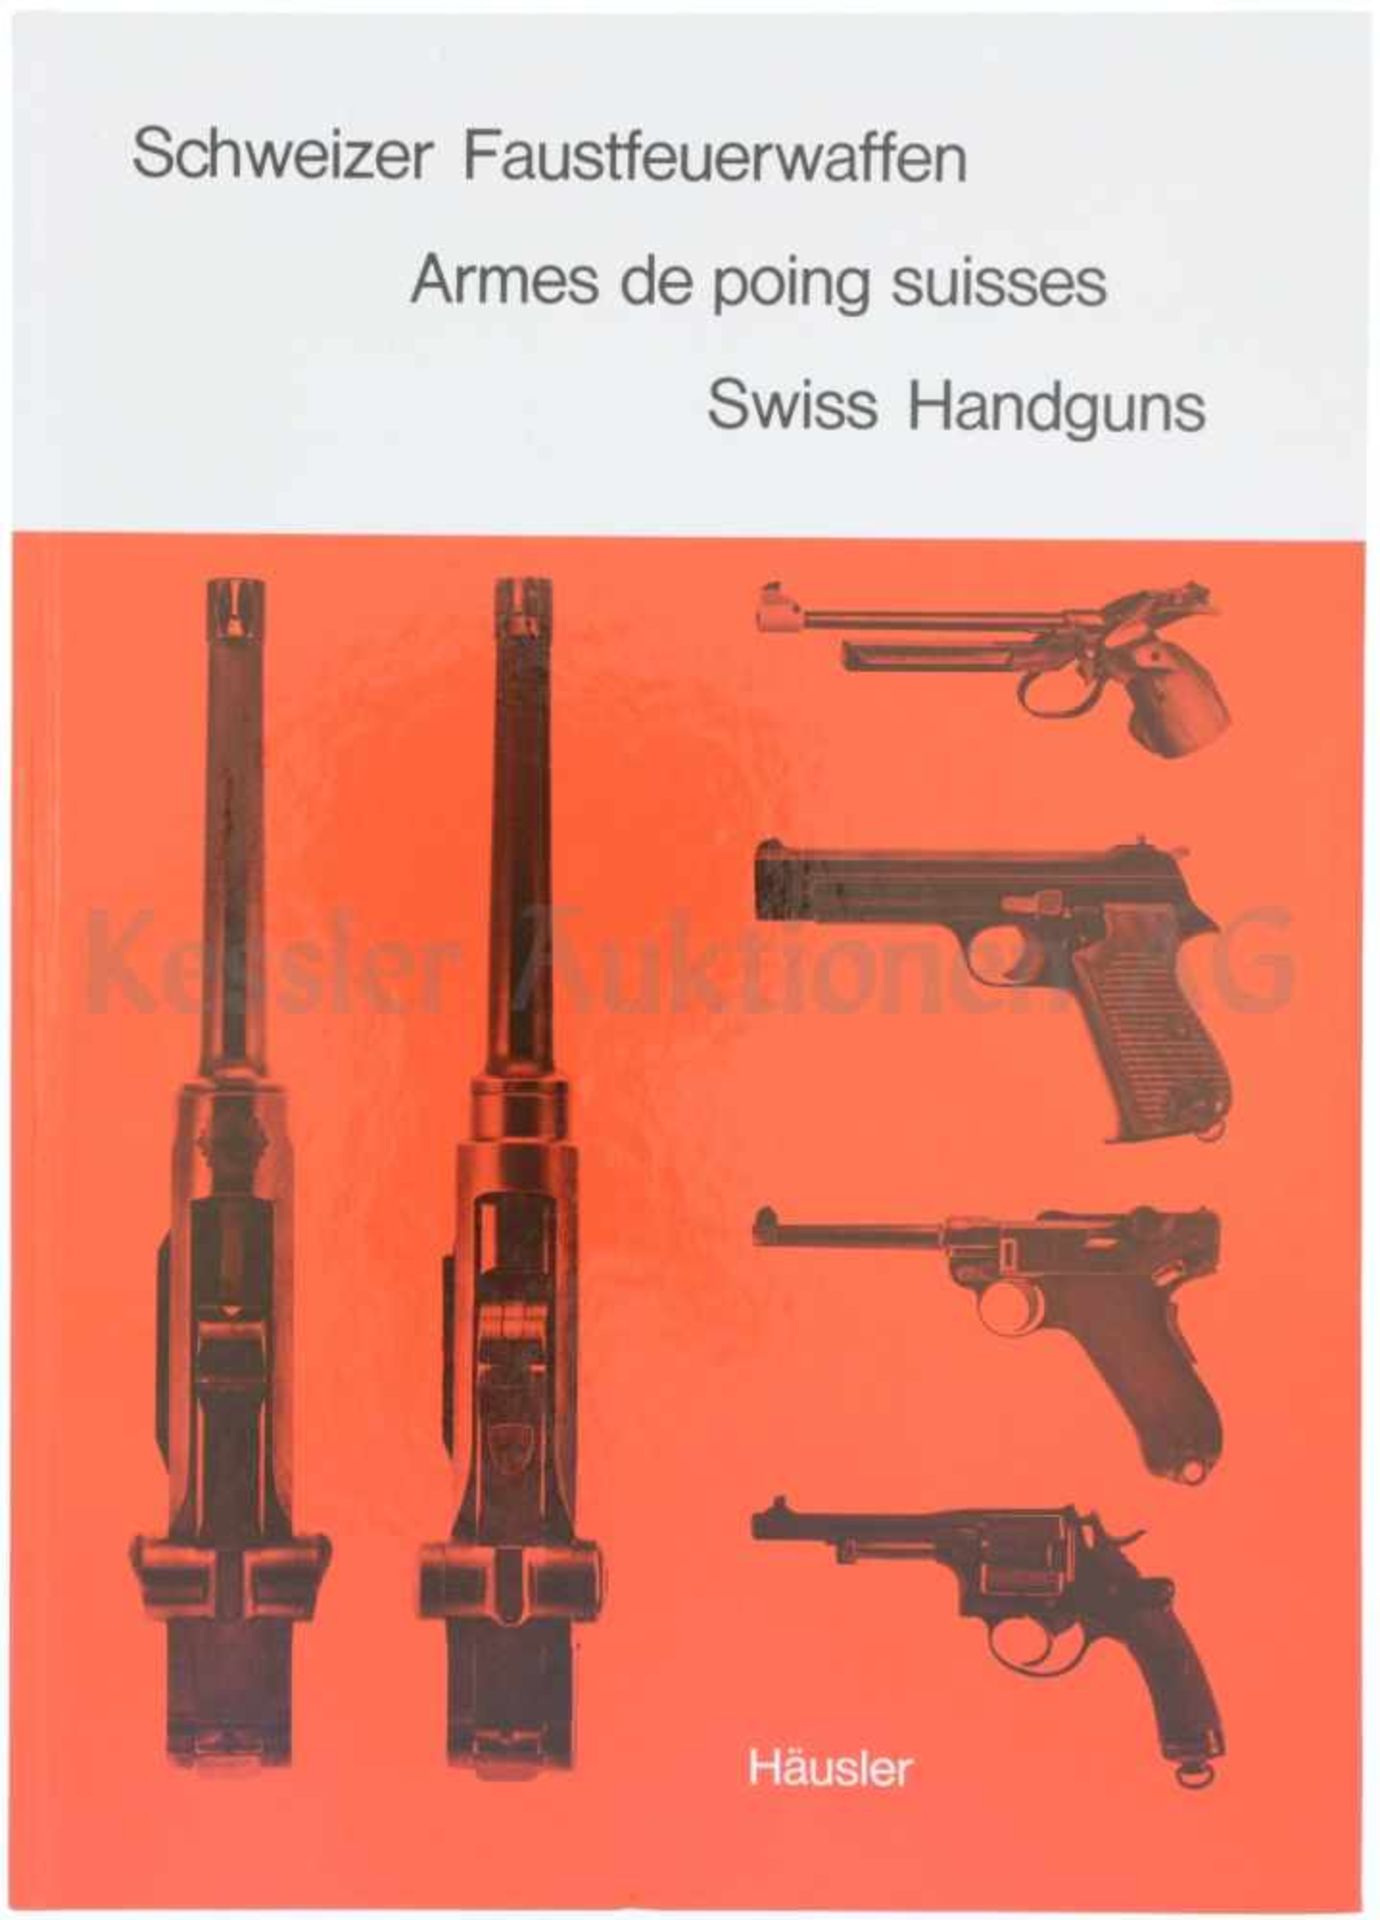 Schweizer Faustfeuerwaffen Autor und Verlag, Fritz Häusler, Frauenfeld. Die Schweizer Pistolen und